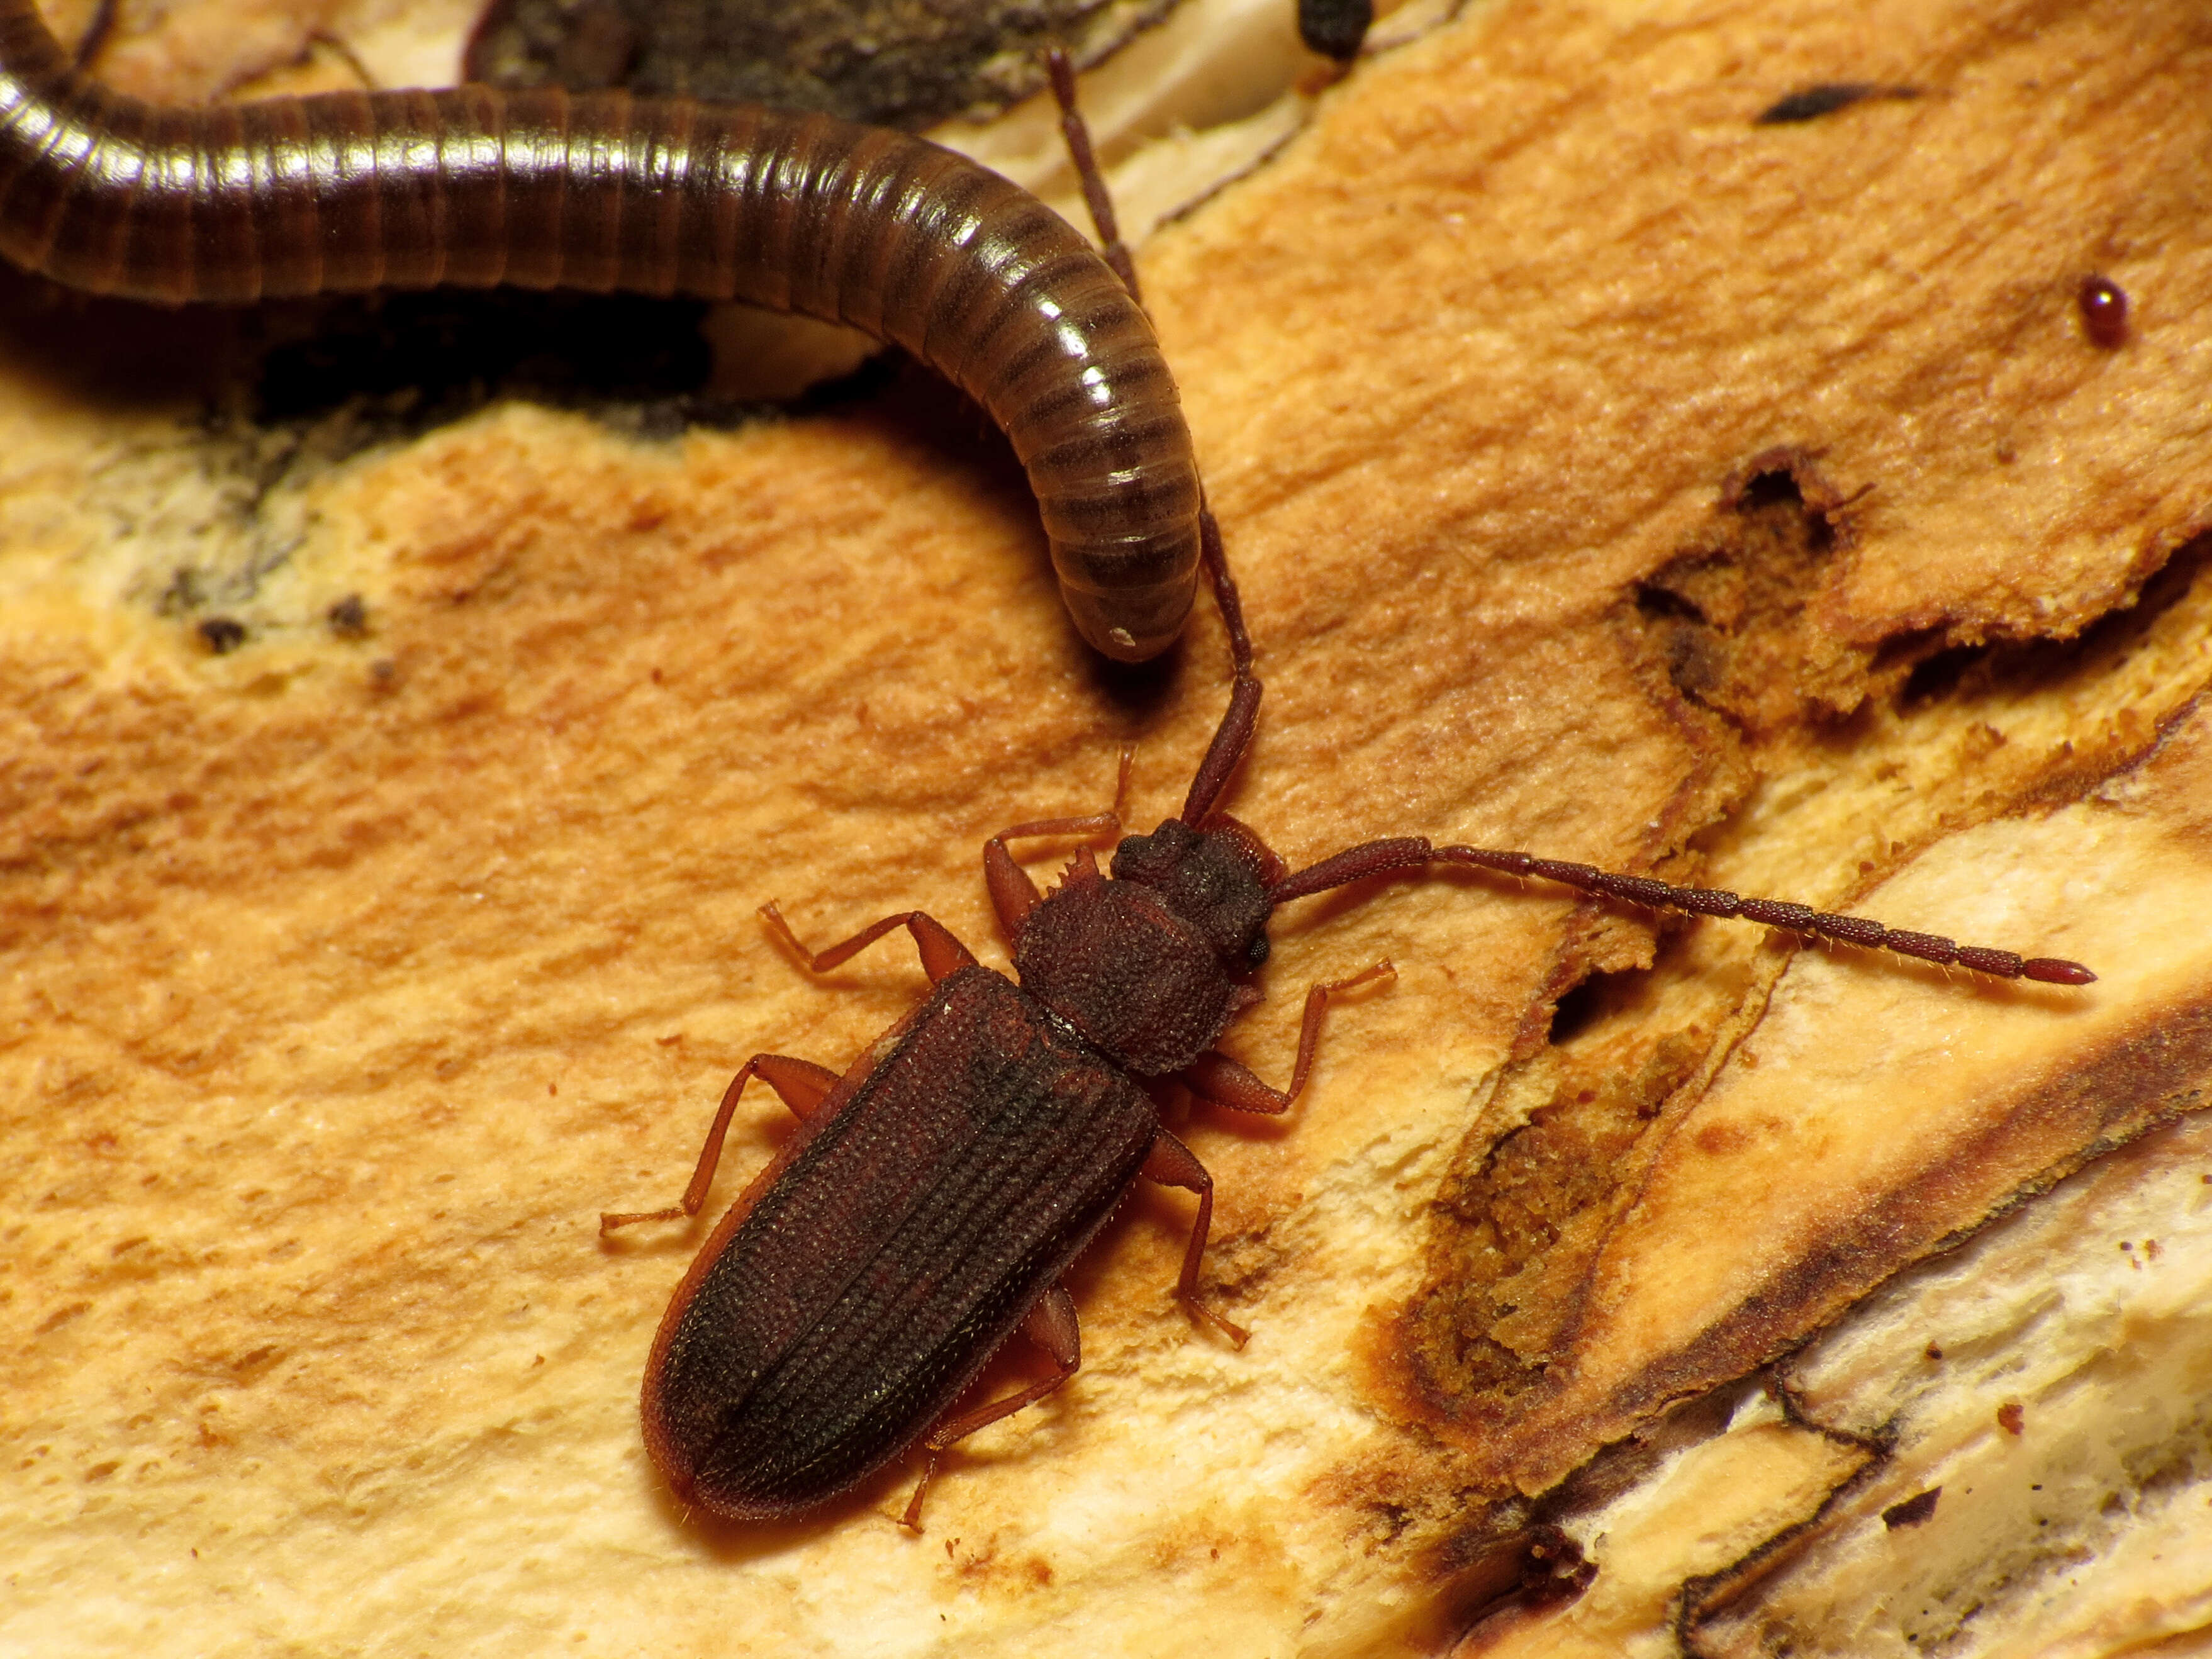 Image of silvanid flat bark beetles